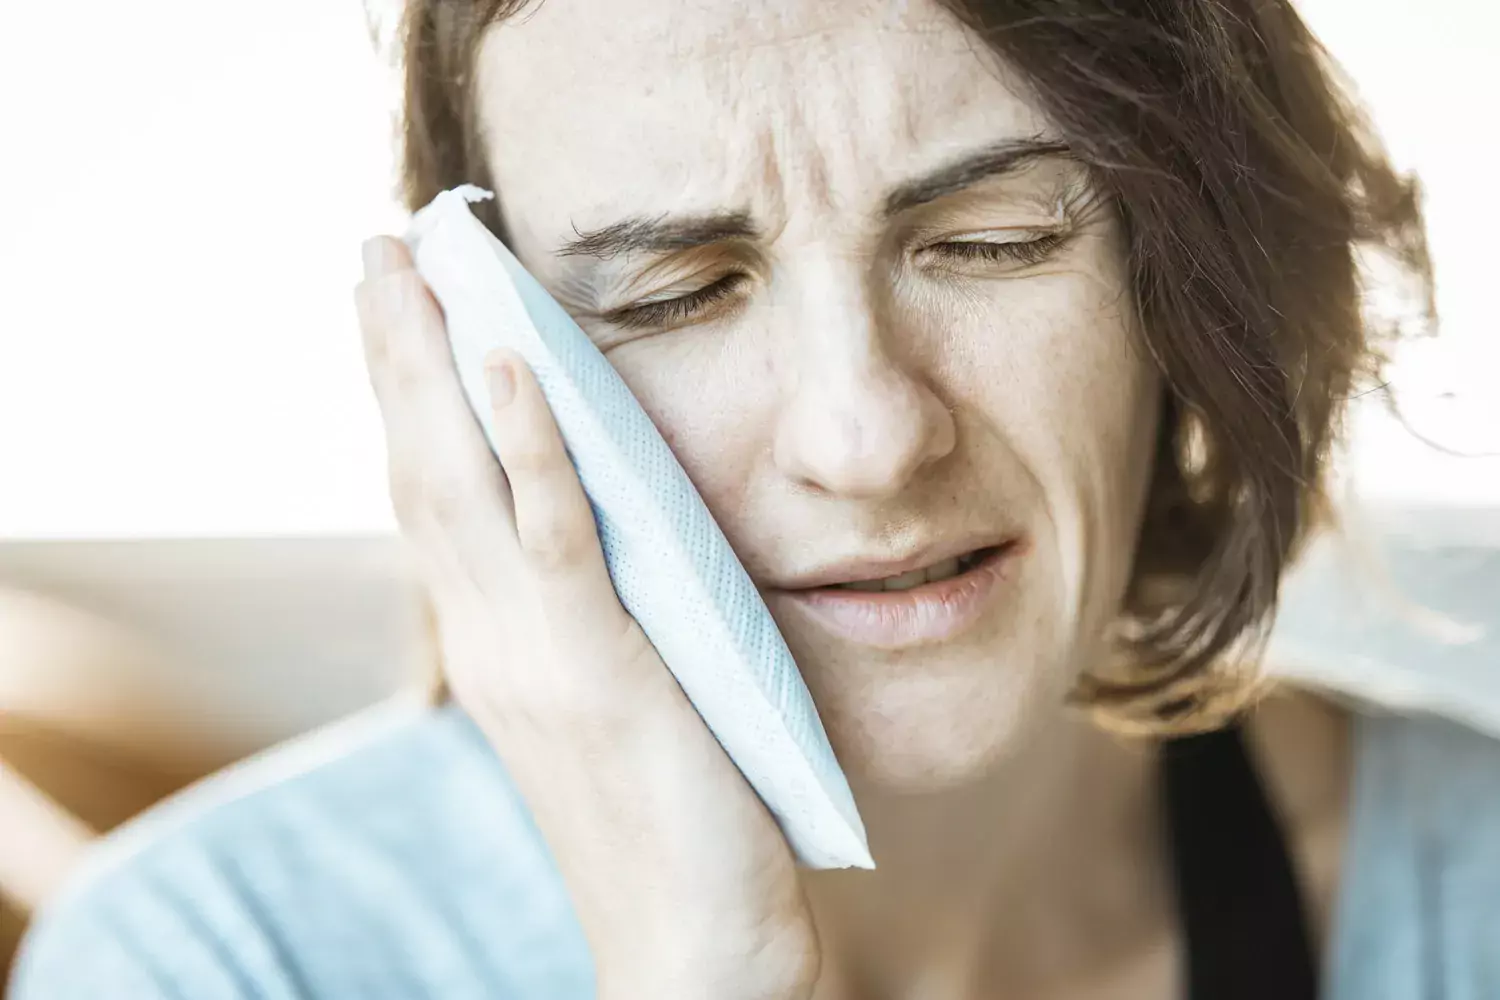 Bilden visar en kvinna som har smärta i käken. Hon håller en kylklamp mot sin högra kind och blundar av smärtan.